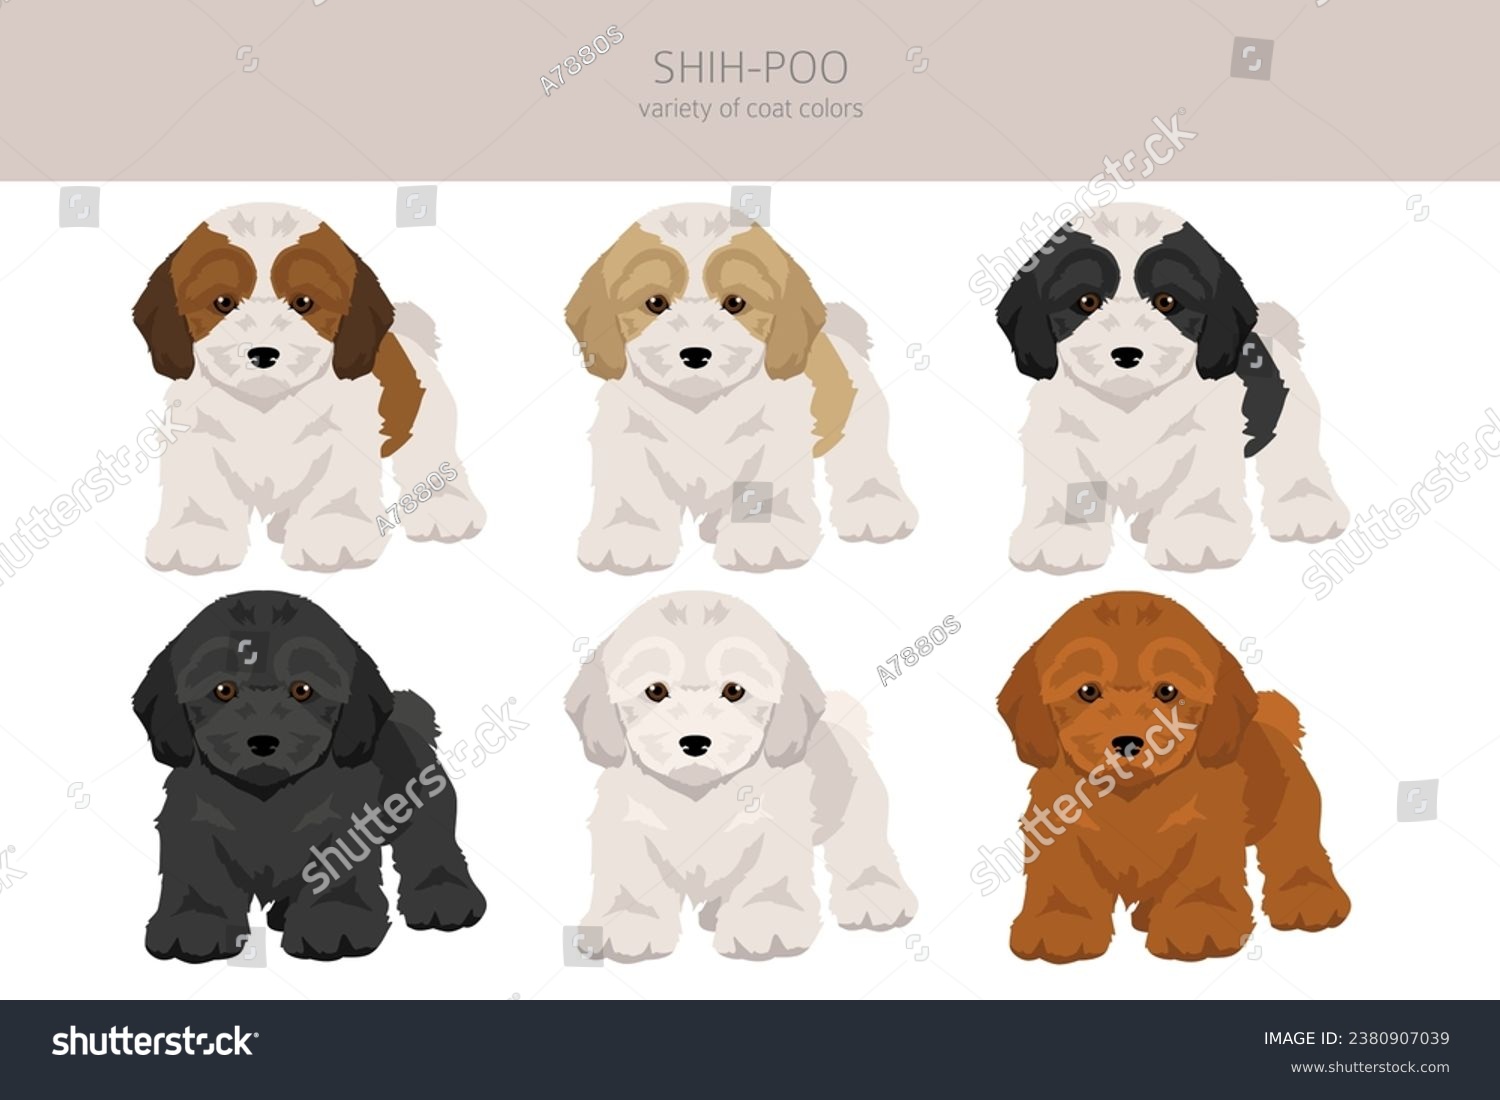 SVG of Shih-Poo clipart. Shih-Tzu  Poodle mix. Different coat colors set.  Vector illustration svg